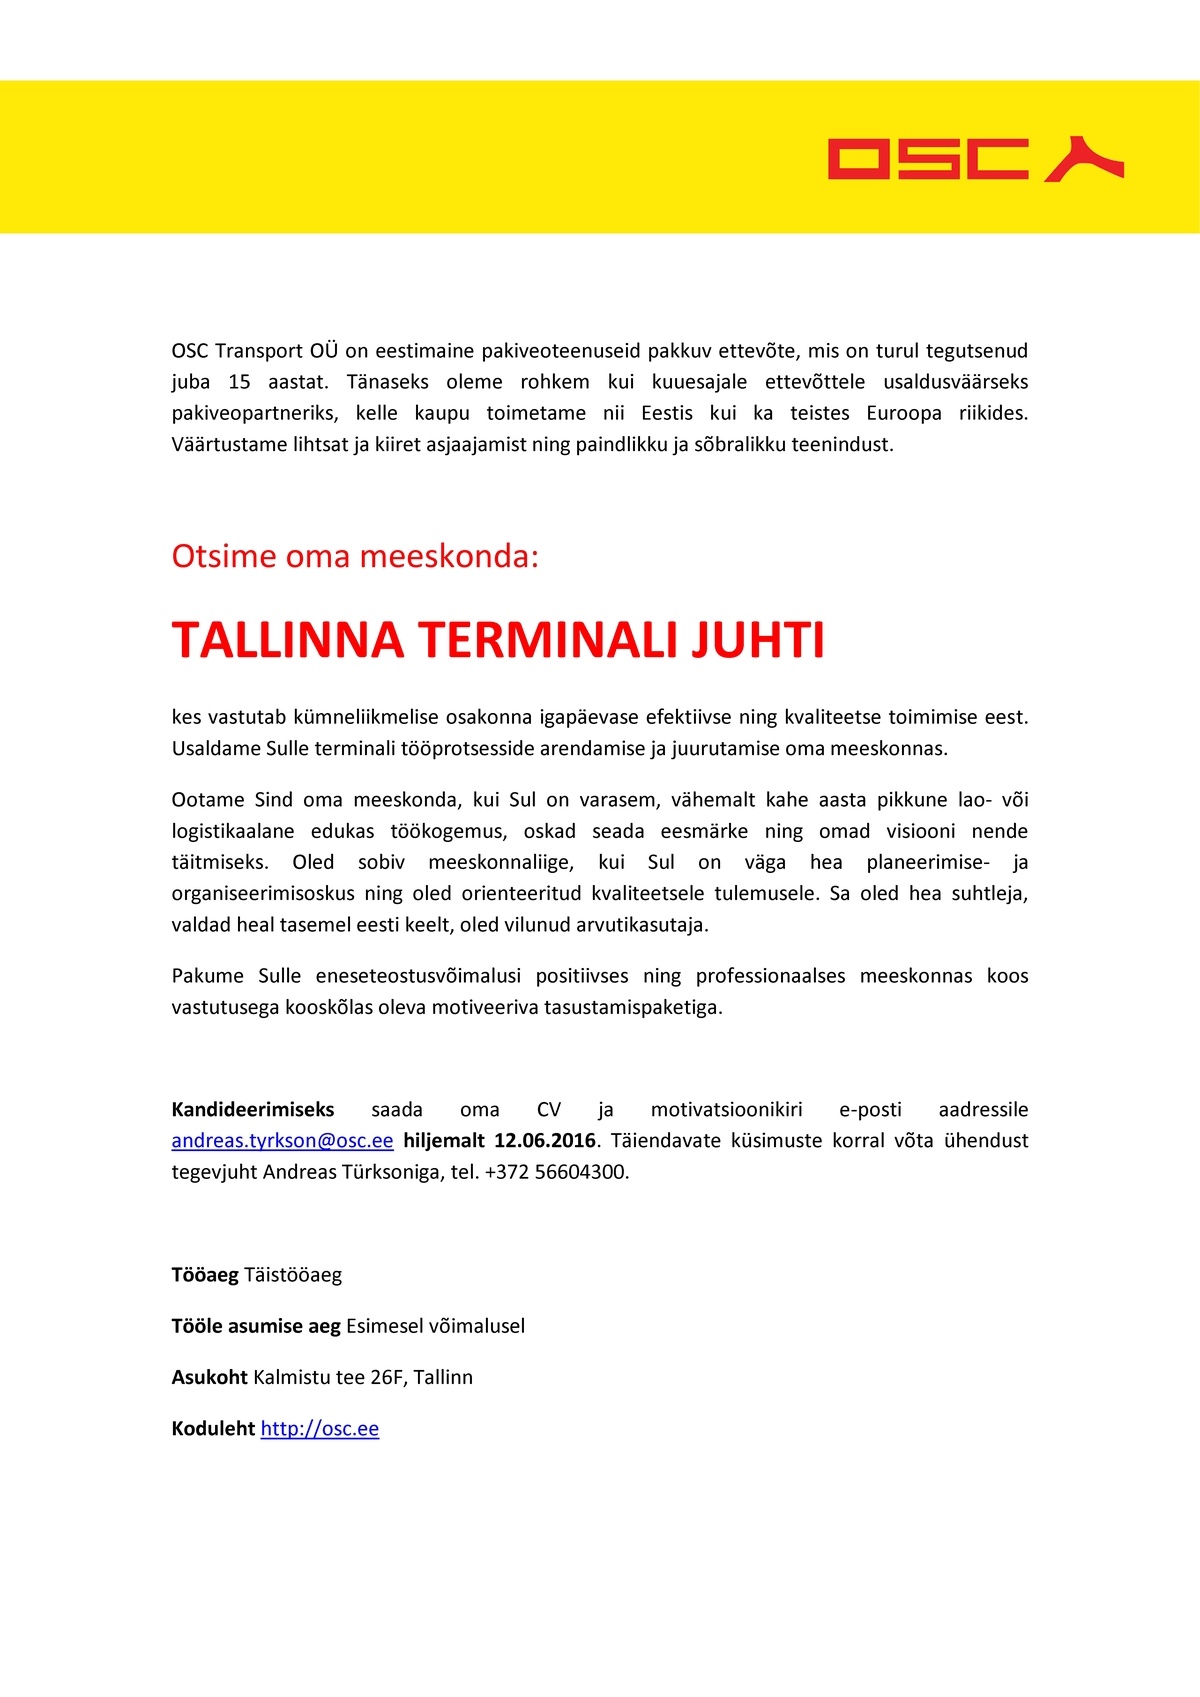 OSC TRANSPORT OÜ Tallinna terminali juht